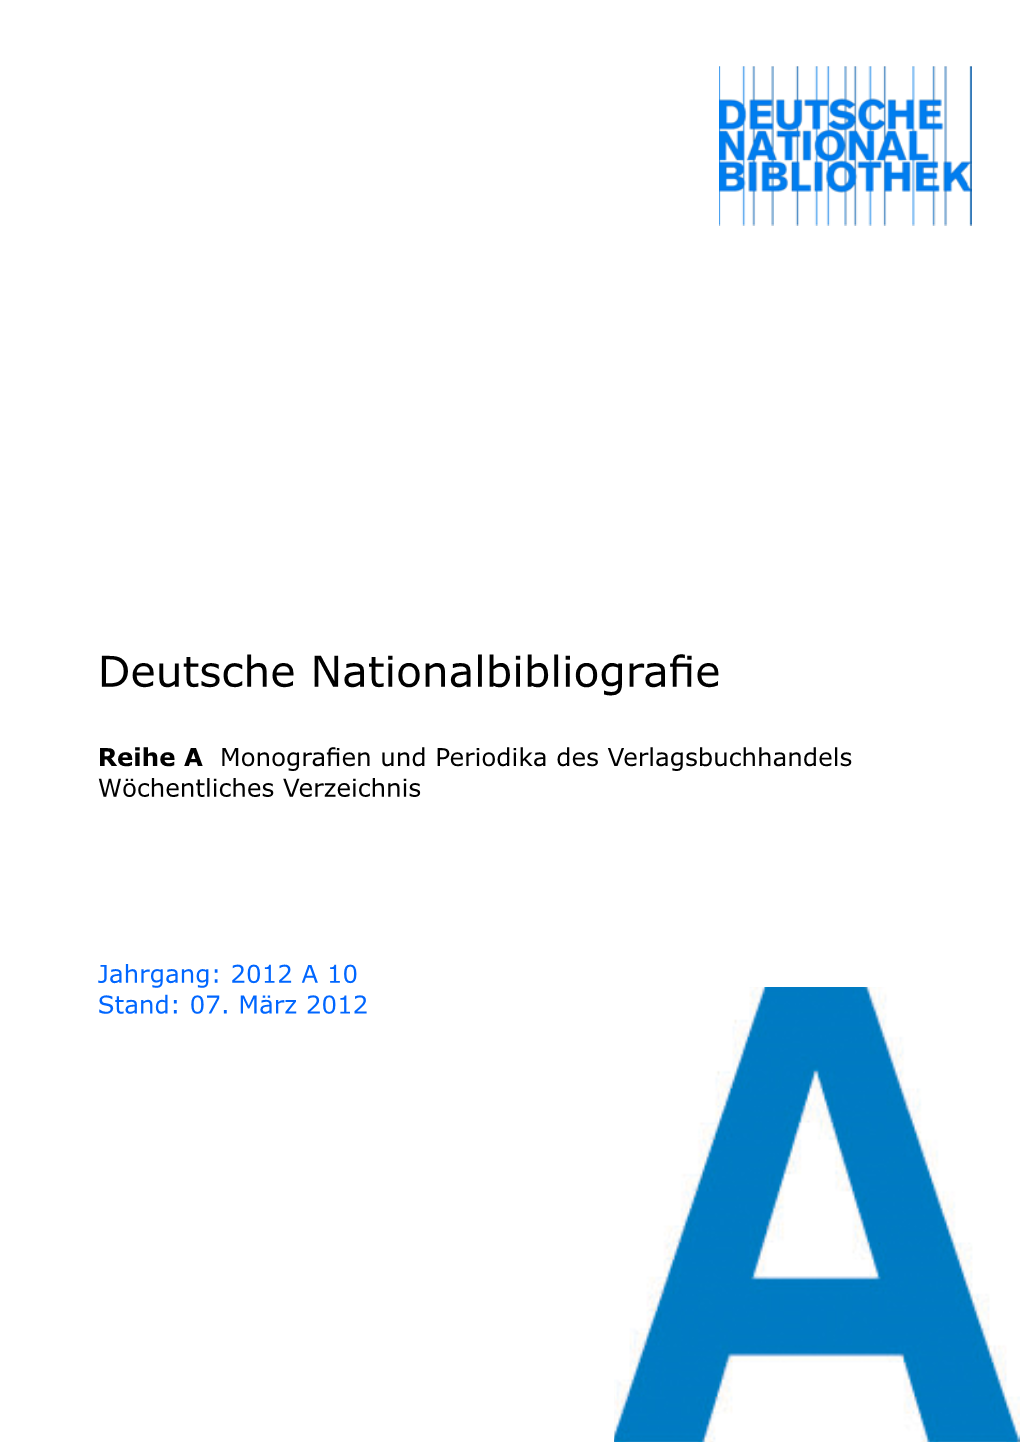 Deutsche Nationalbibliografie 2012 a 10